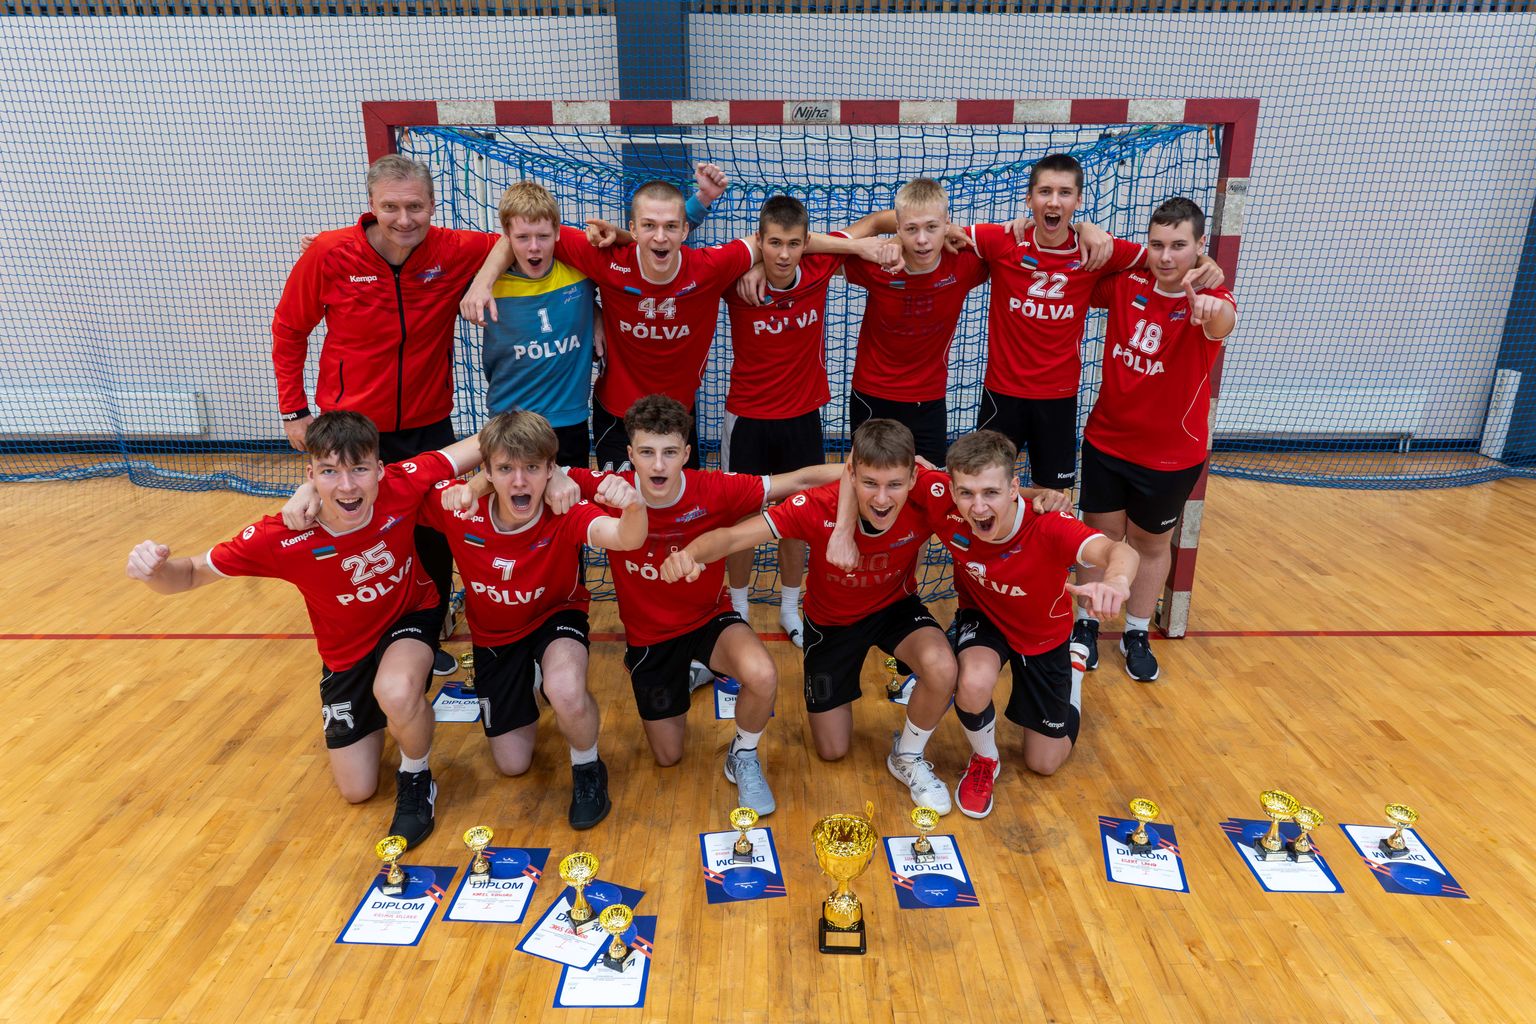 Põlva käsipalliklubi / Põlva spordikool võistkond tuli Eesti karikavõitjaks noormeeste B-vanuseklassi käsipallis.